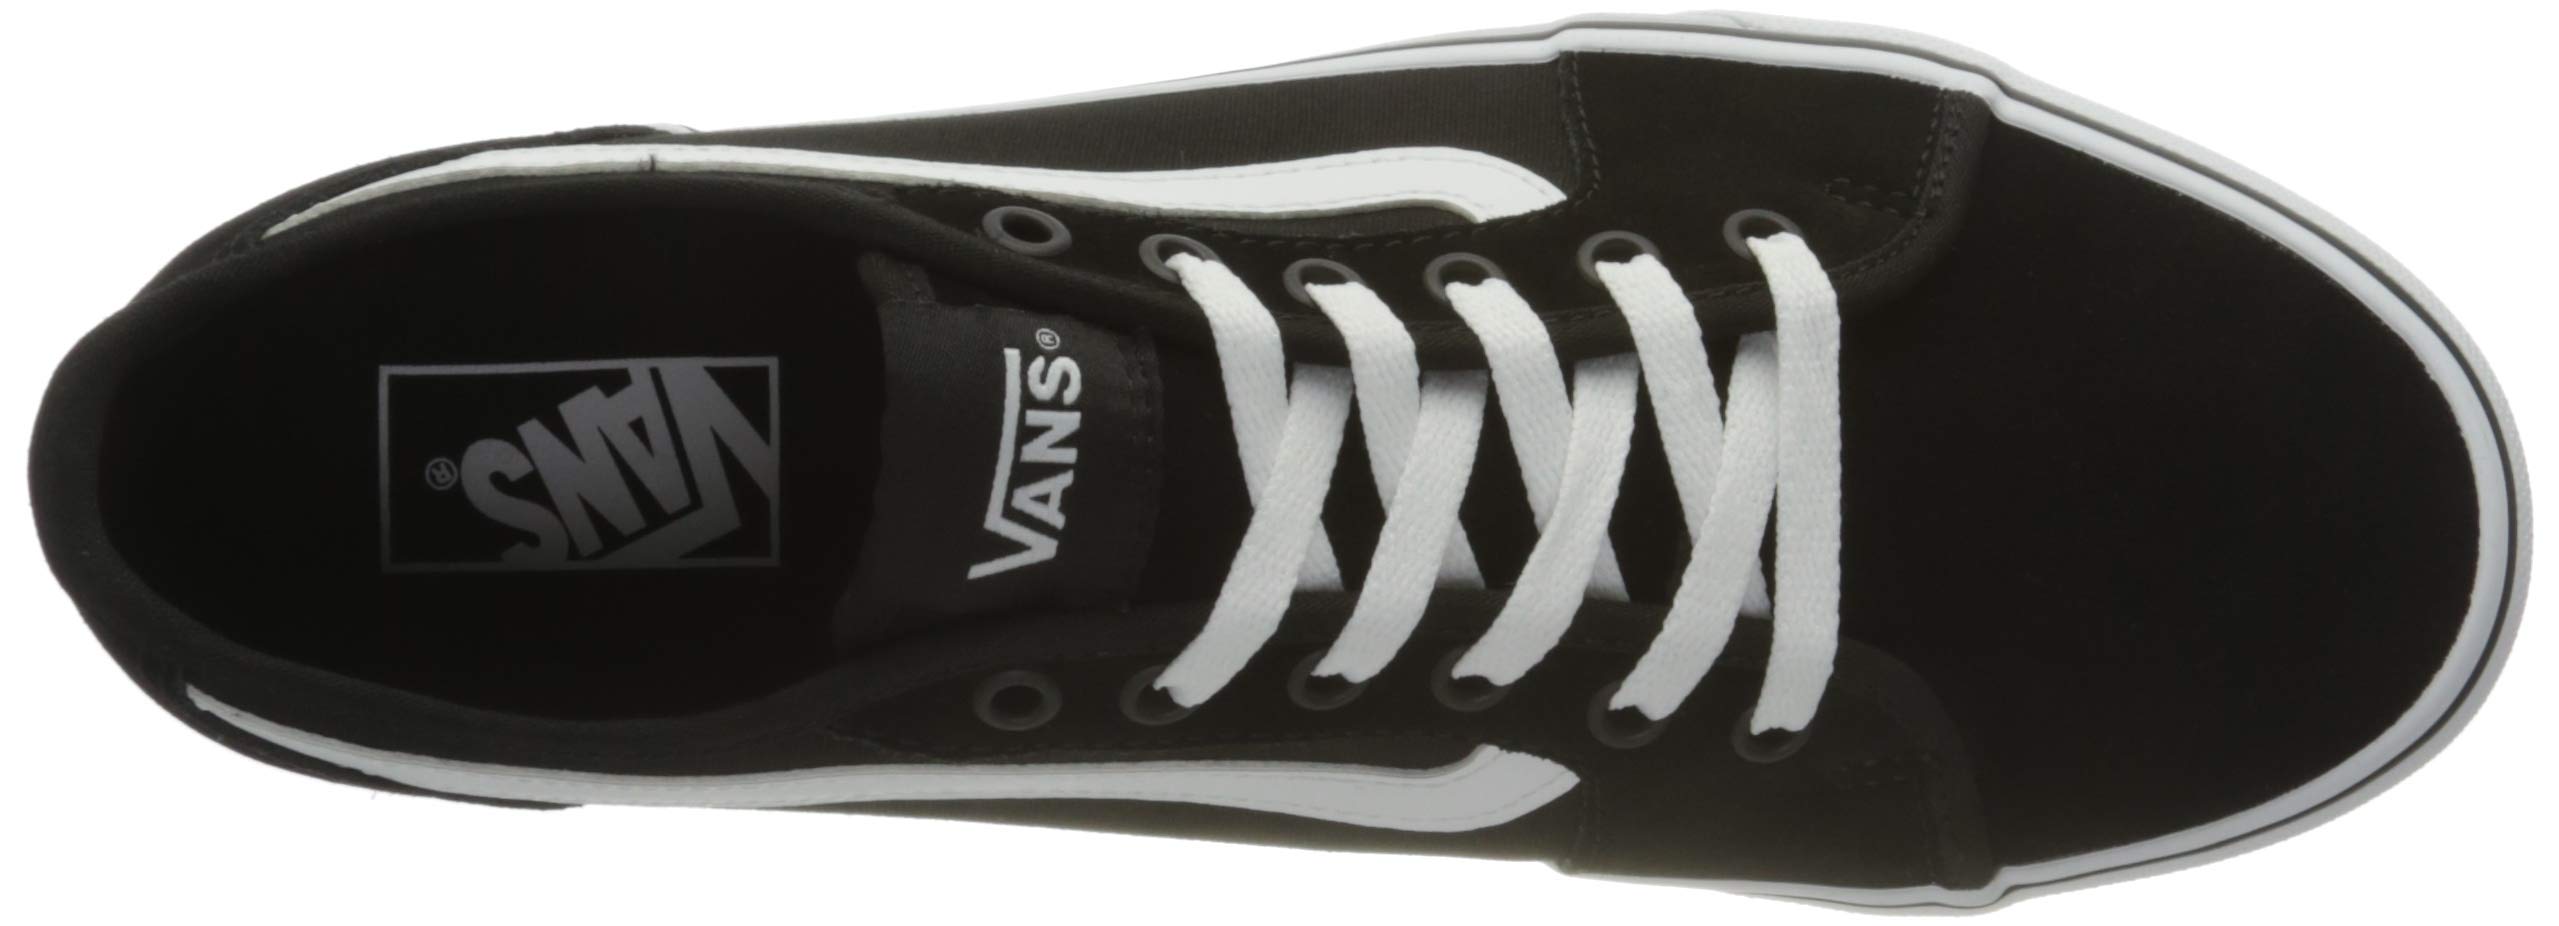 Vans Men's Low-Top Sneakers